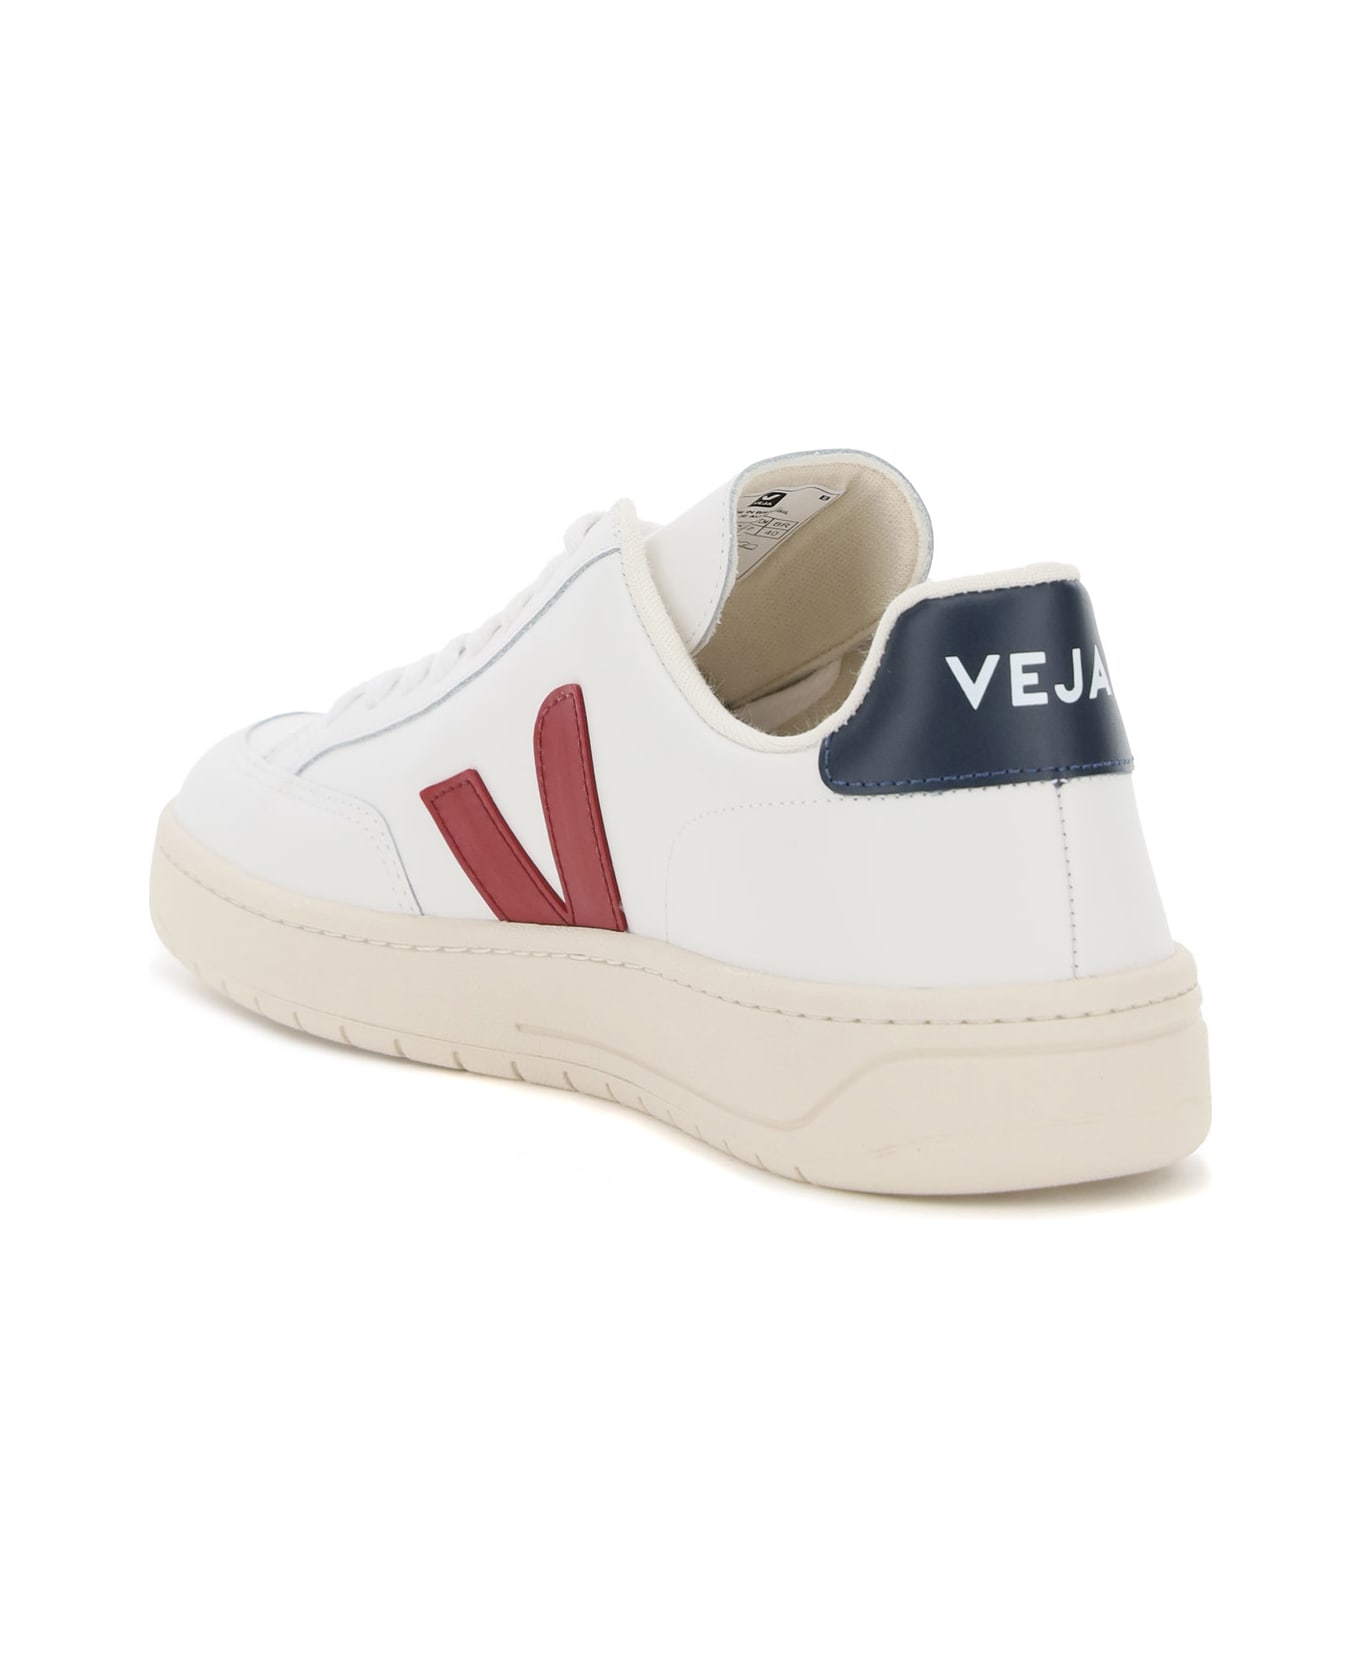 Veja V-12 Leather Sneakers - EXTRA WHITE MARSALA NAUTICO (White)